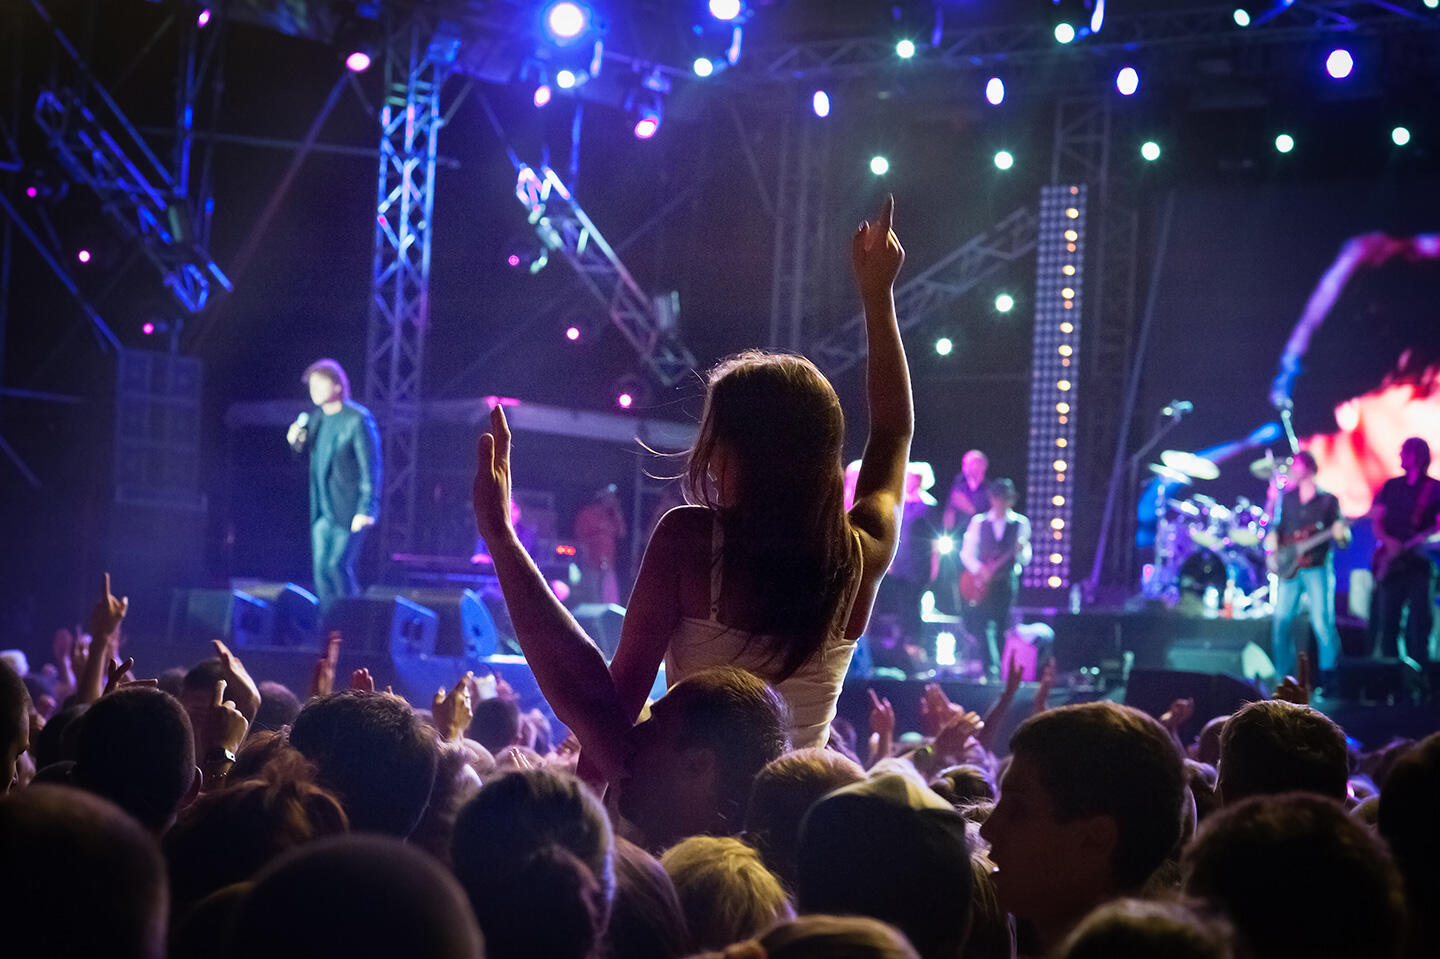 Spectatrice enthousiaste sur les épaules d'un festivalier lors des Francofolies de La Rochelle, scène de concert en arrière-plan.